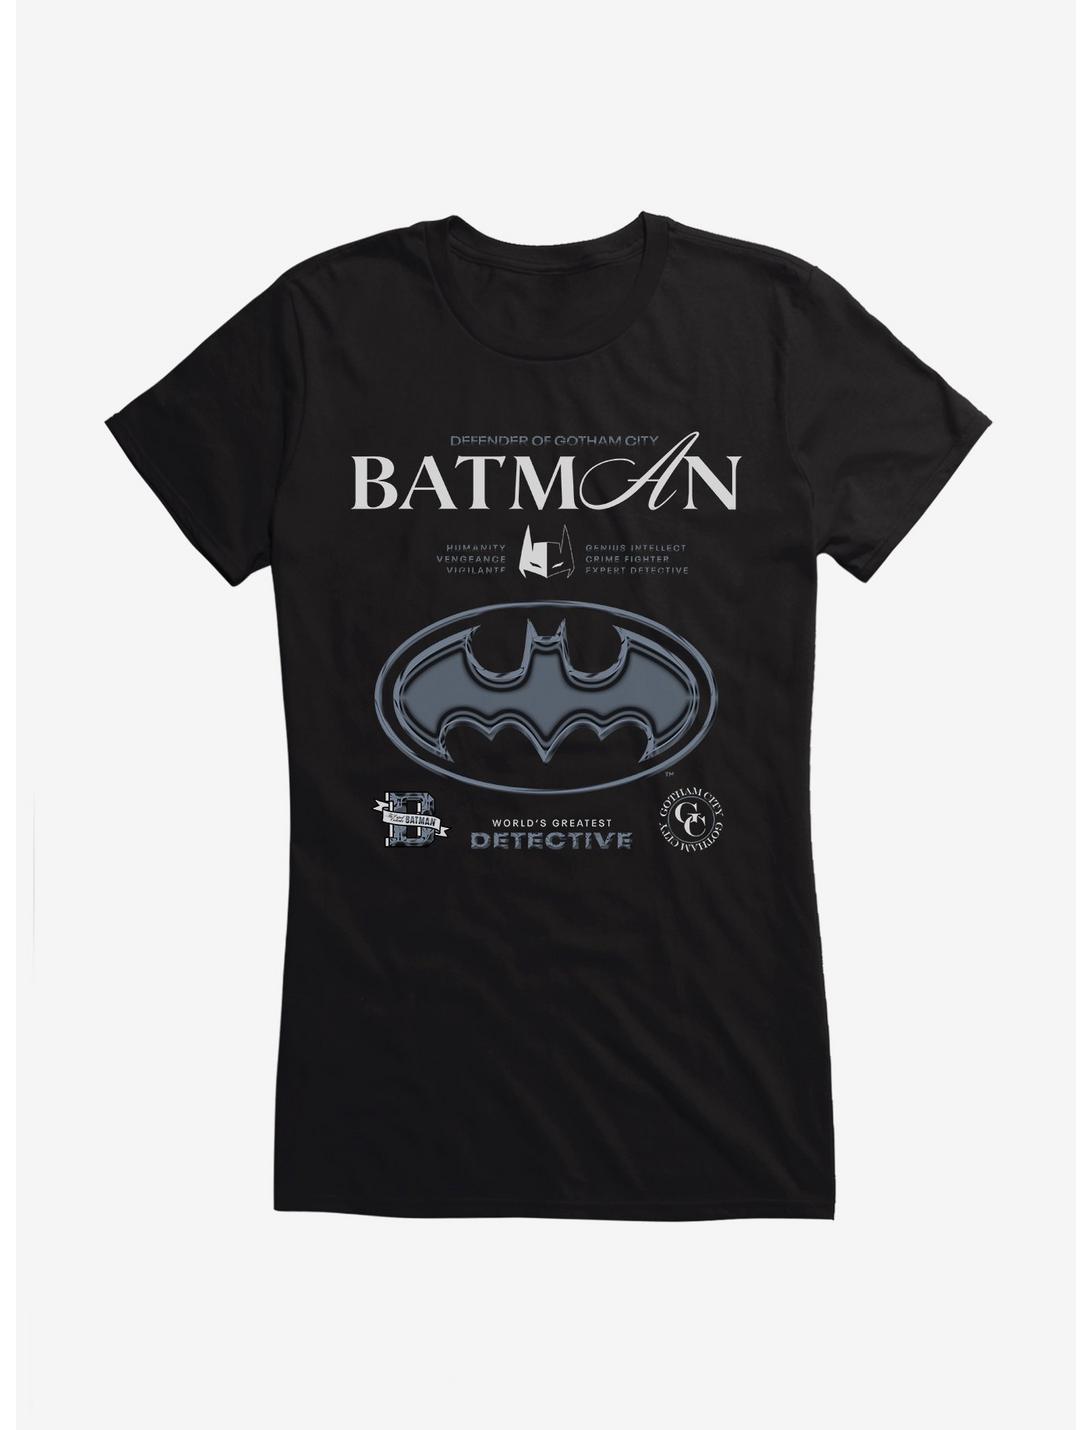 Batman Defender Of Gotham City Girls T-Shirt, BLACK, hi-res